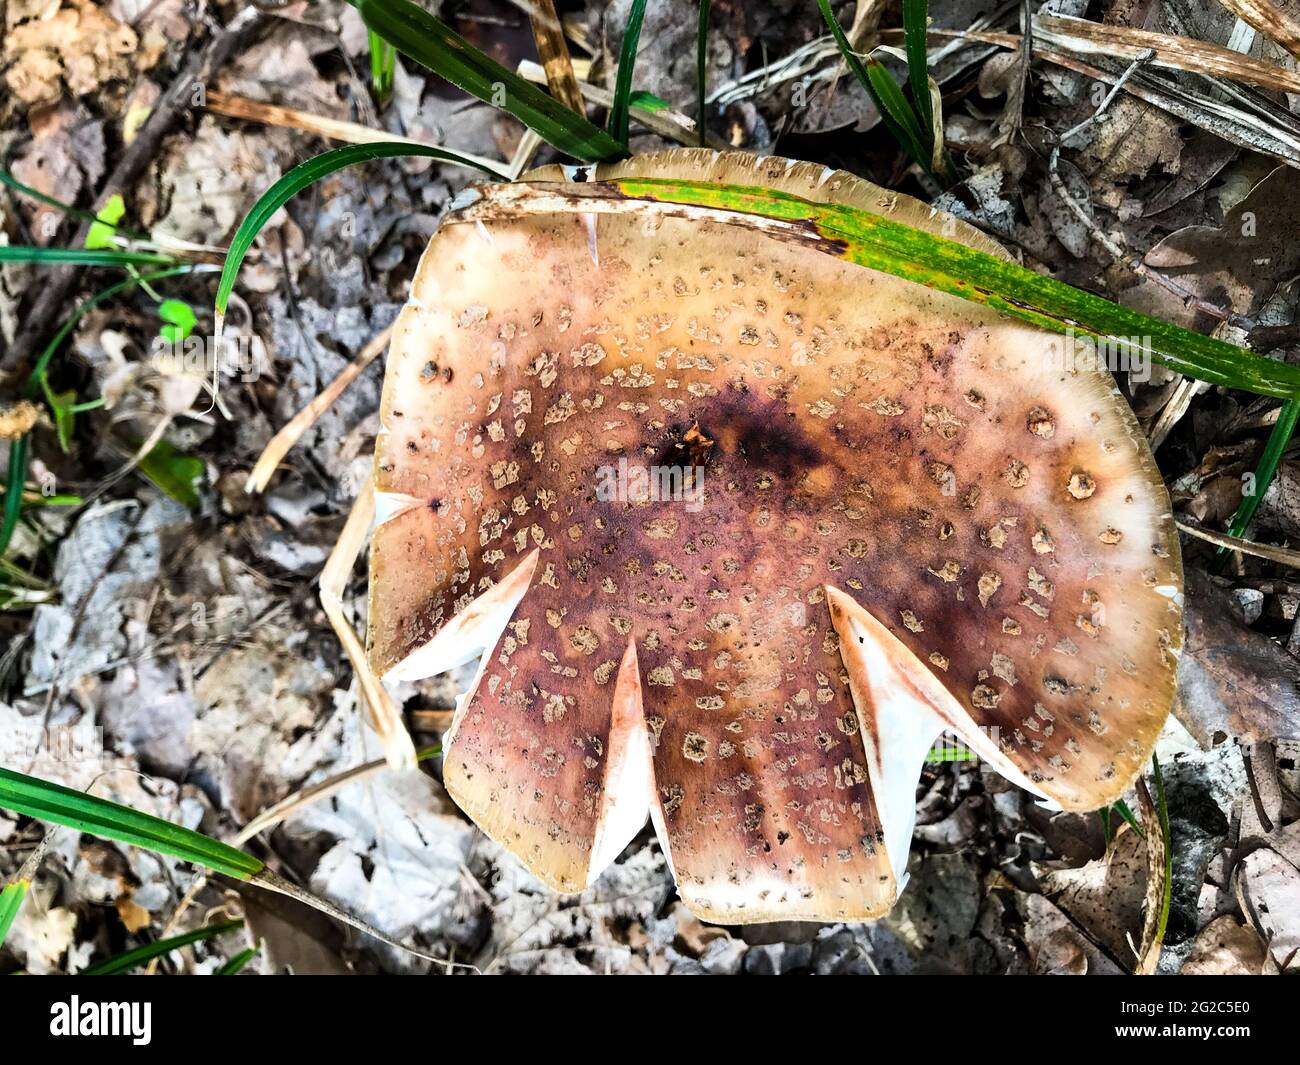 A forest mushroom. Mushroom mushroom in the woods. Stock Photo